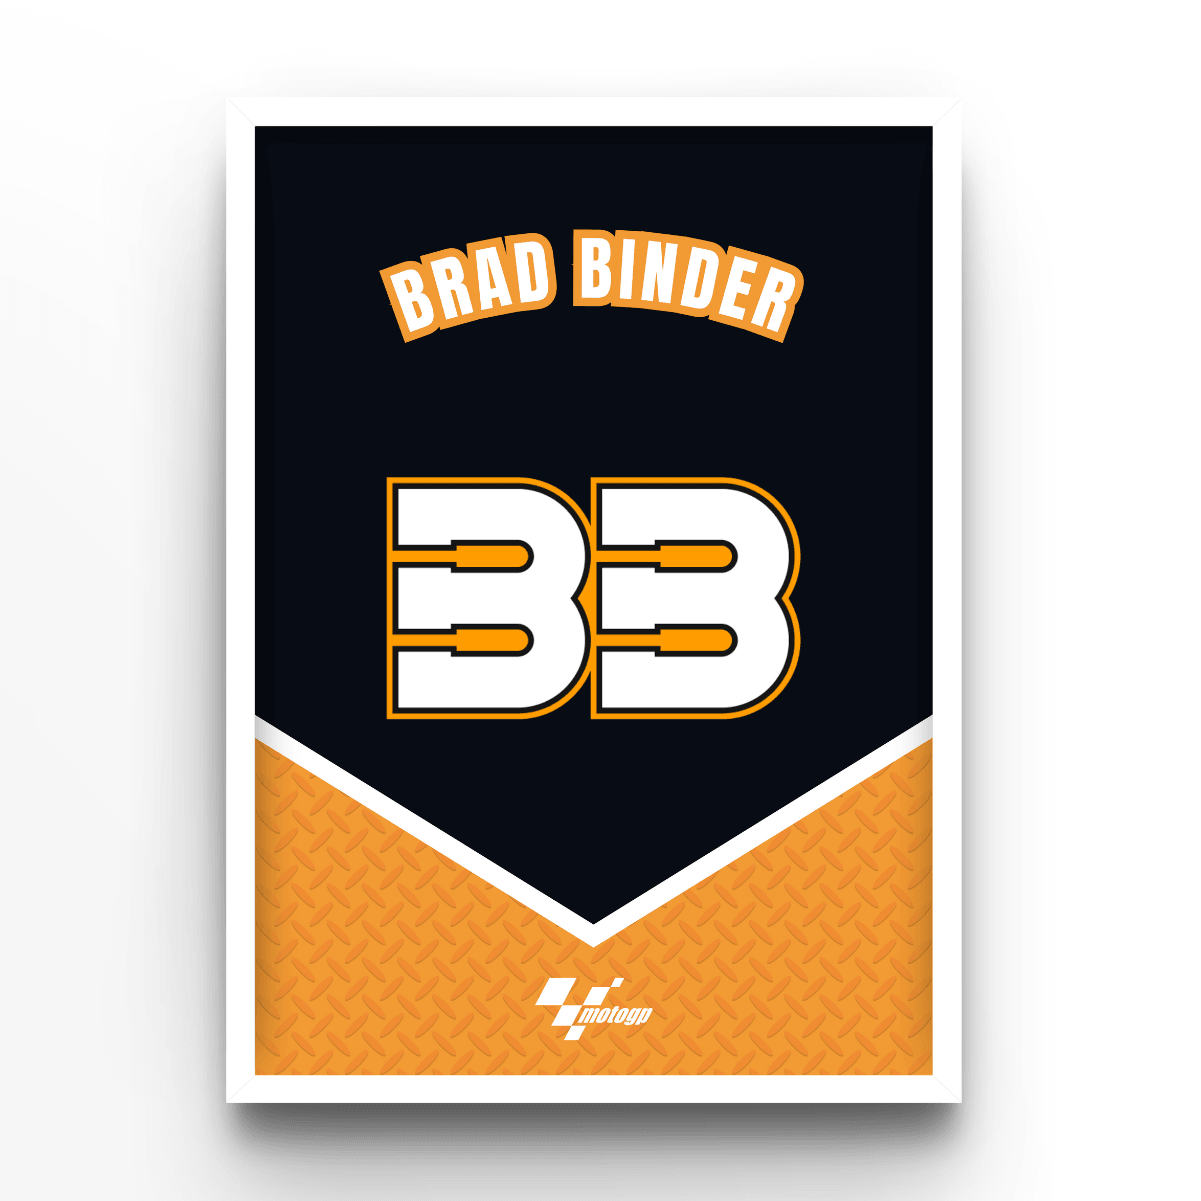 Brad Binder - A4, A3, A2 Posters Base - Poster Print Shop / Art Prints / PostersBase